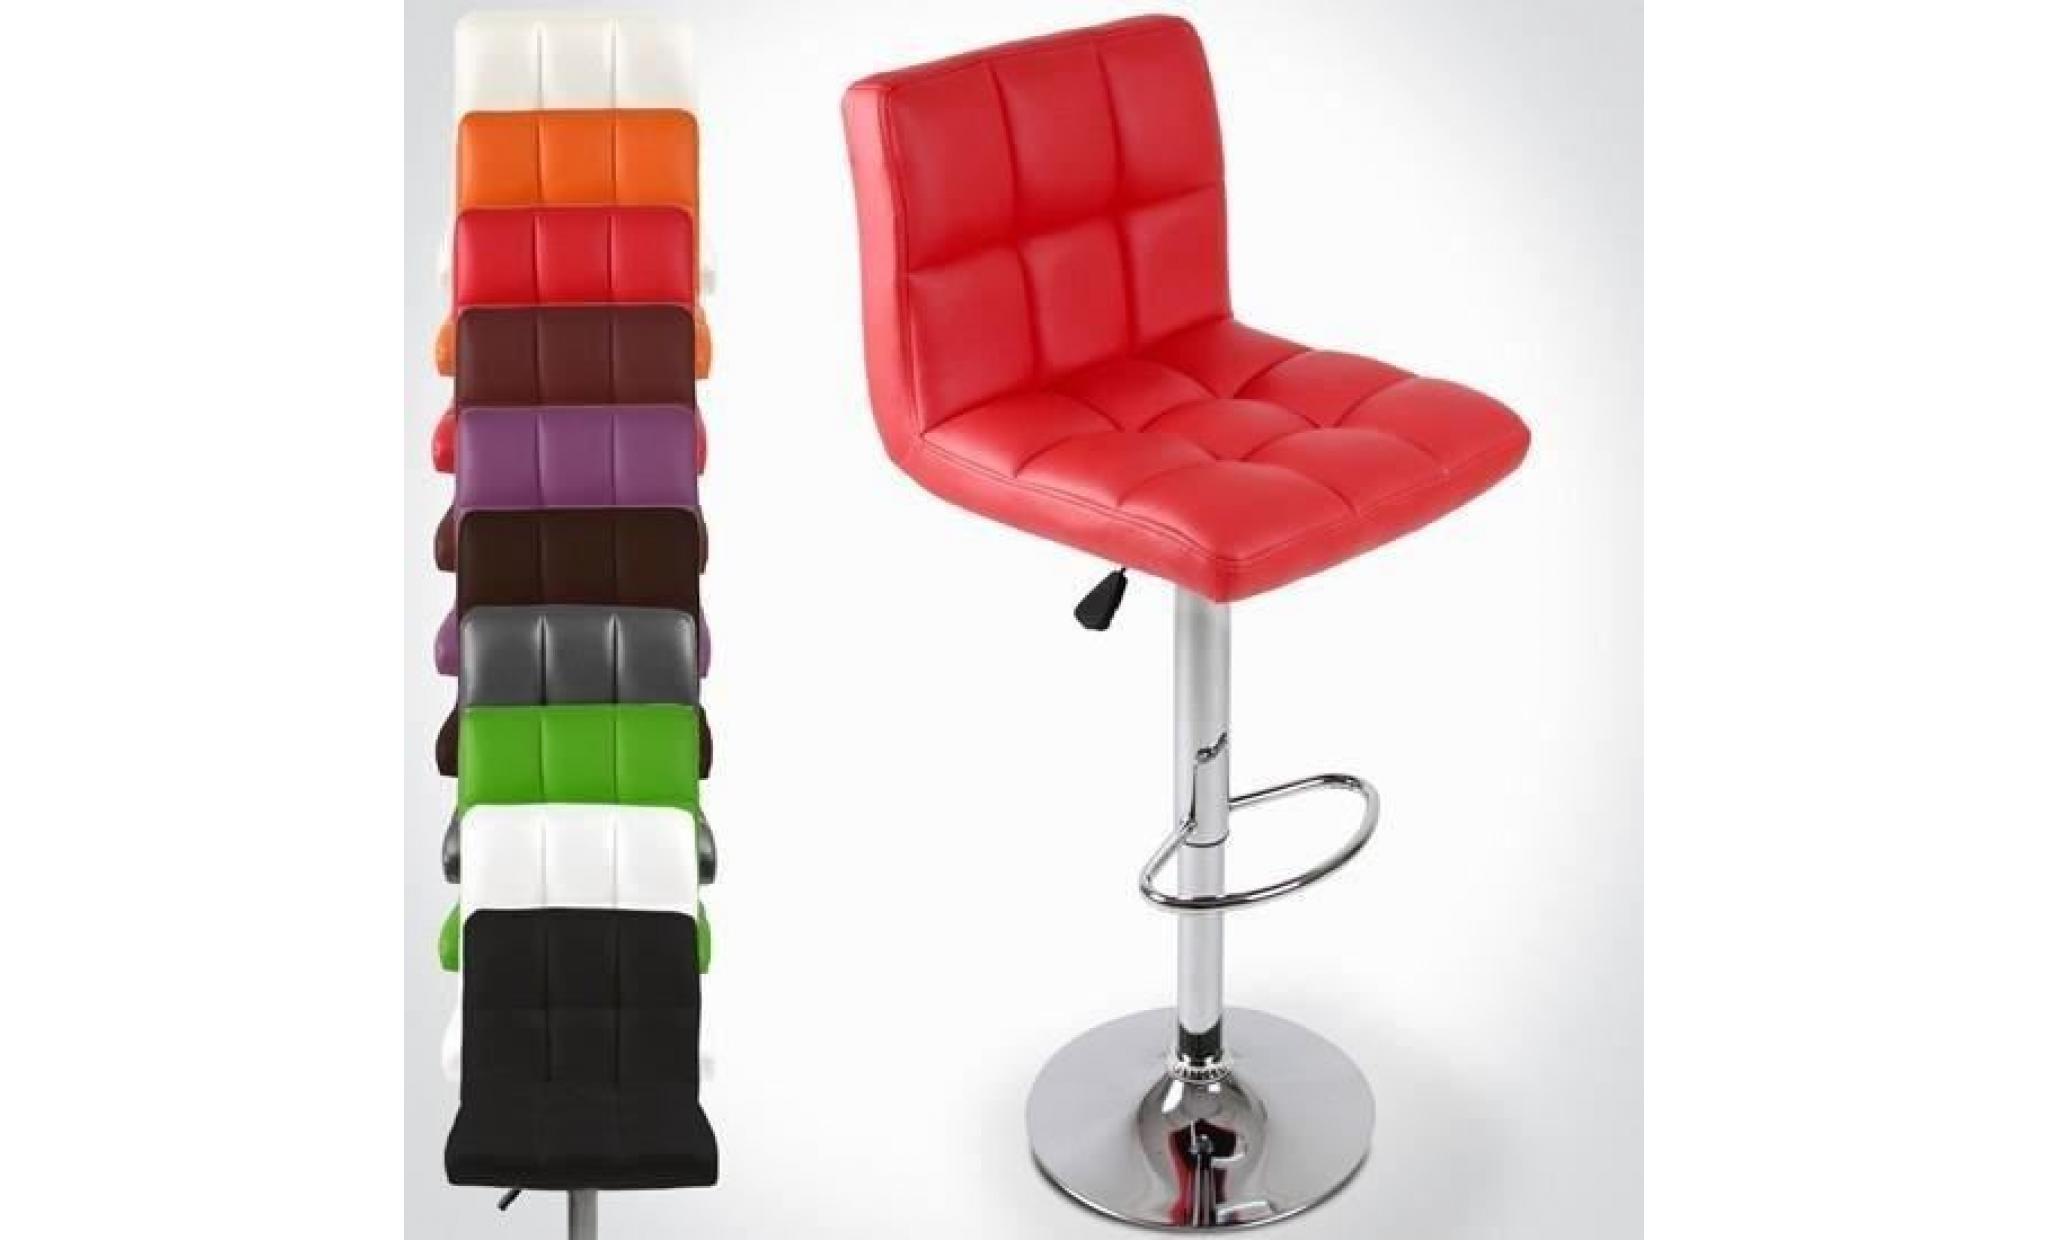 pe tabouret chaise de bar lot de 2 en simili cuir et métal réglable en hauteur rotatif rouge，tabouret de siège pas cher